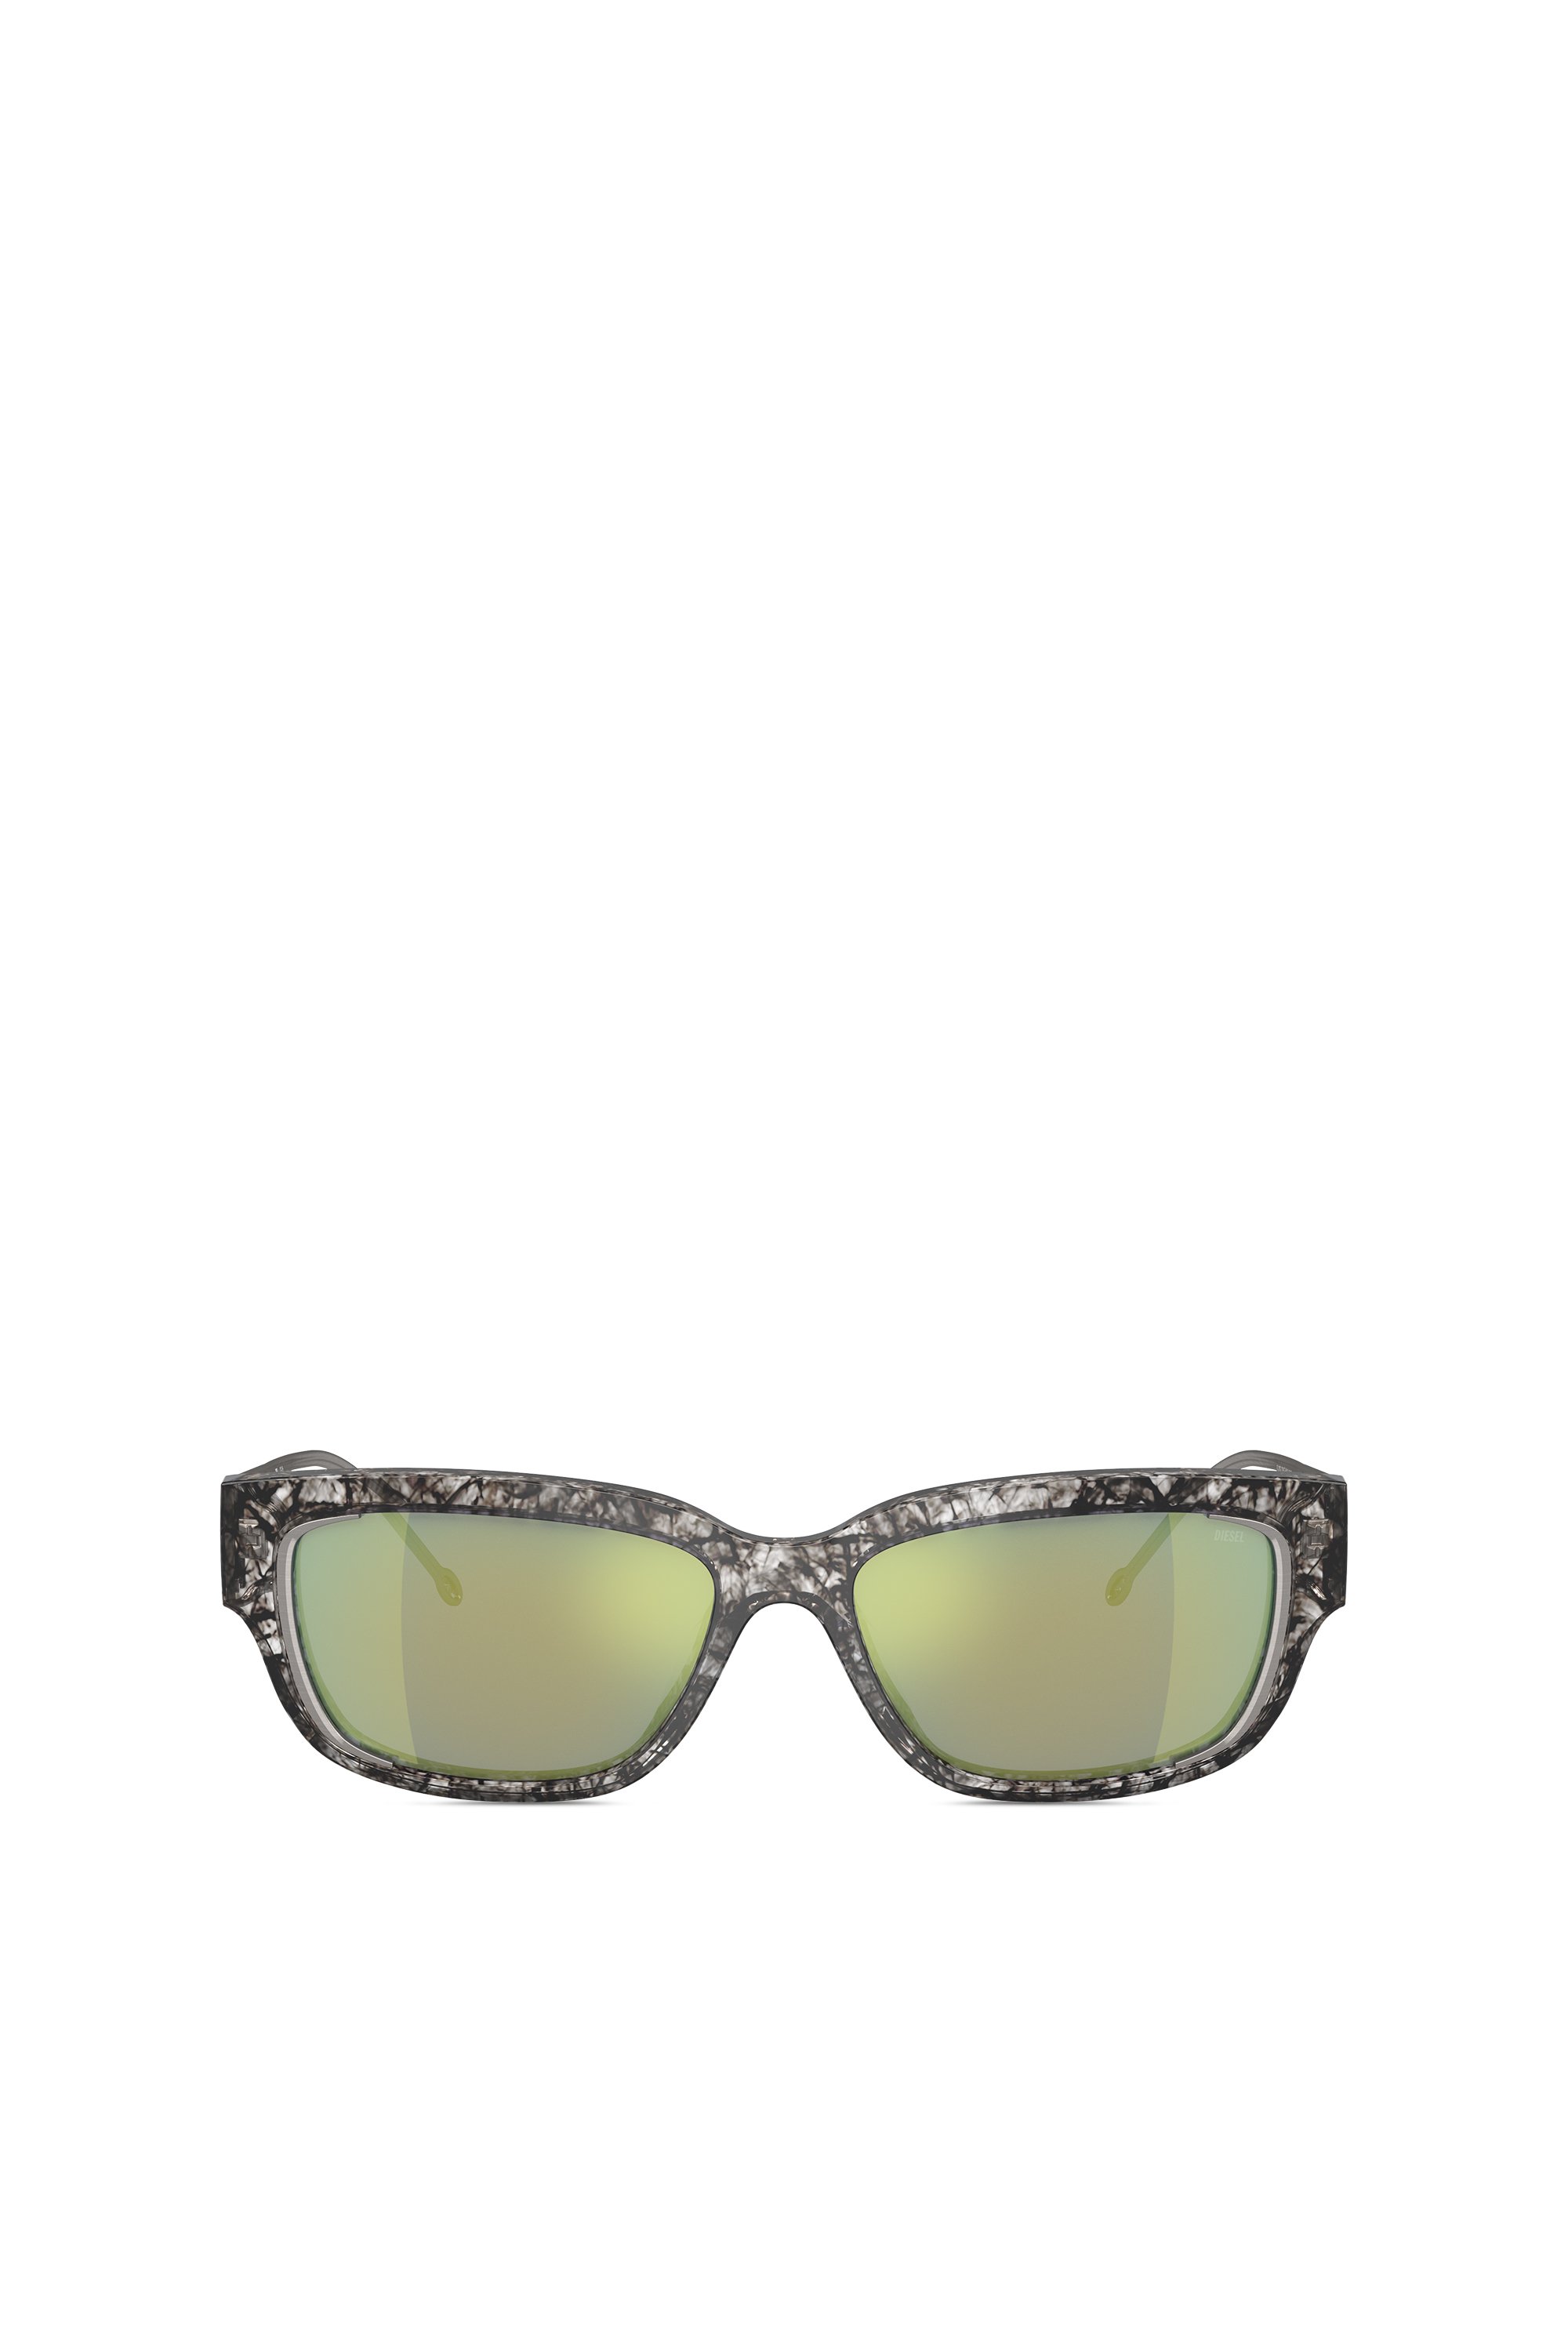 Diesel - Gafas ocn estilo esencial - Gafas de sol - Unisex - Multicolor